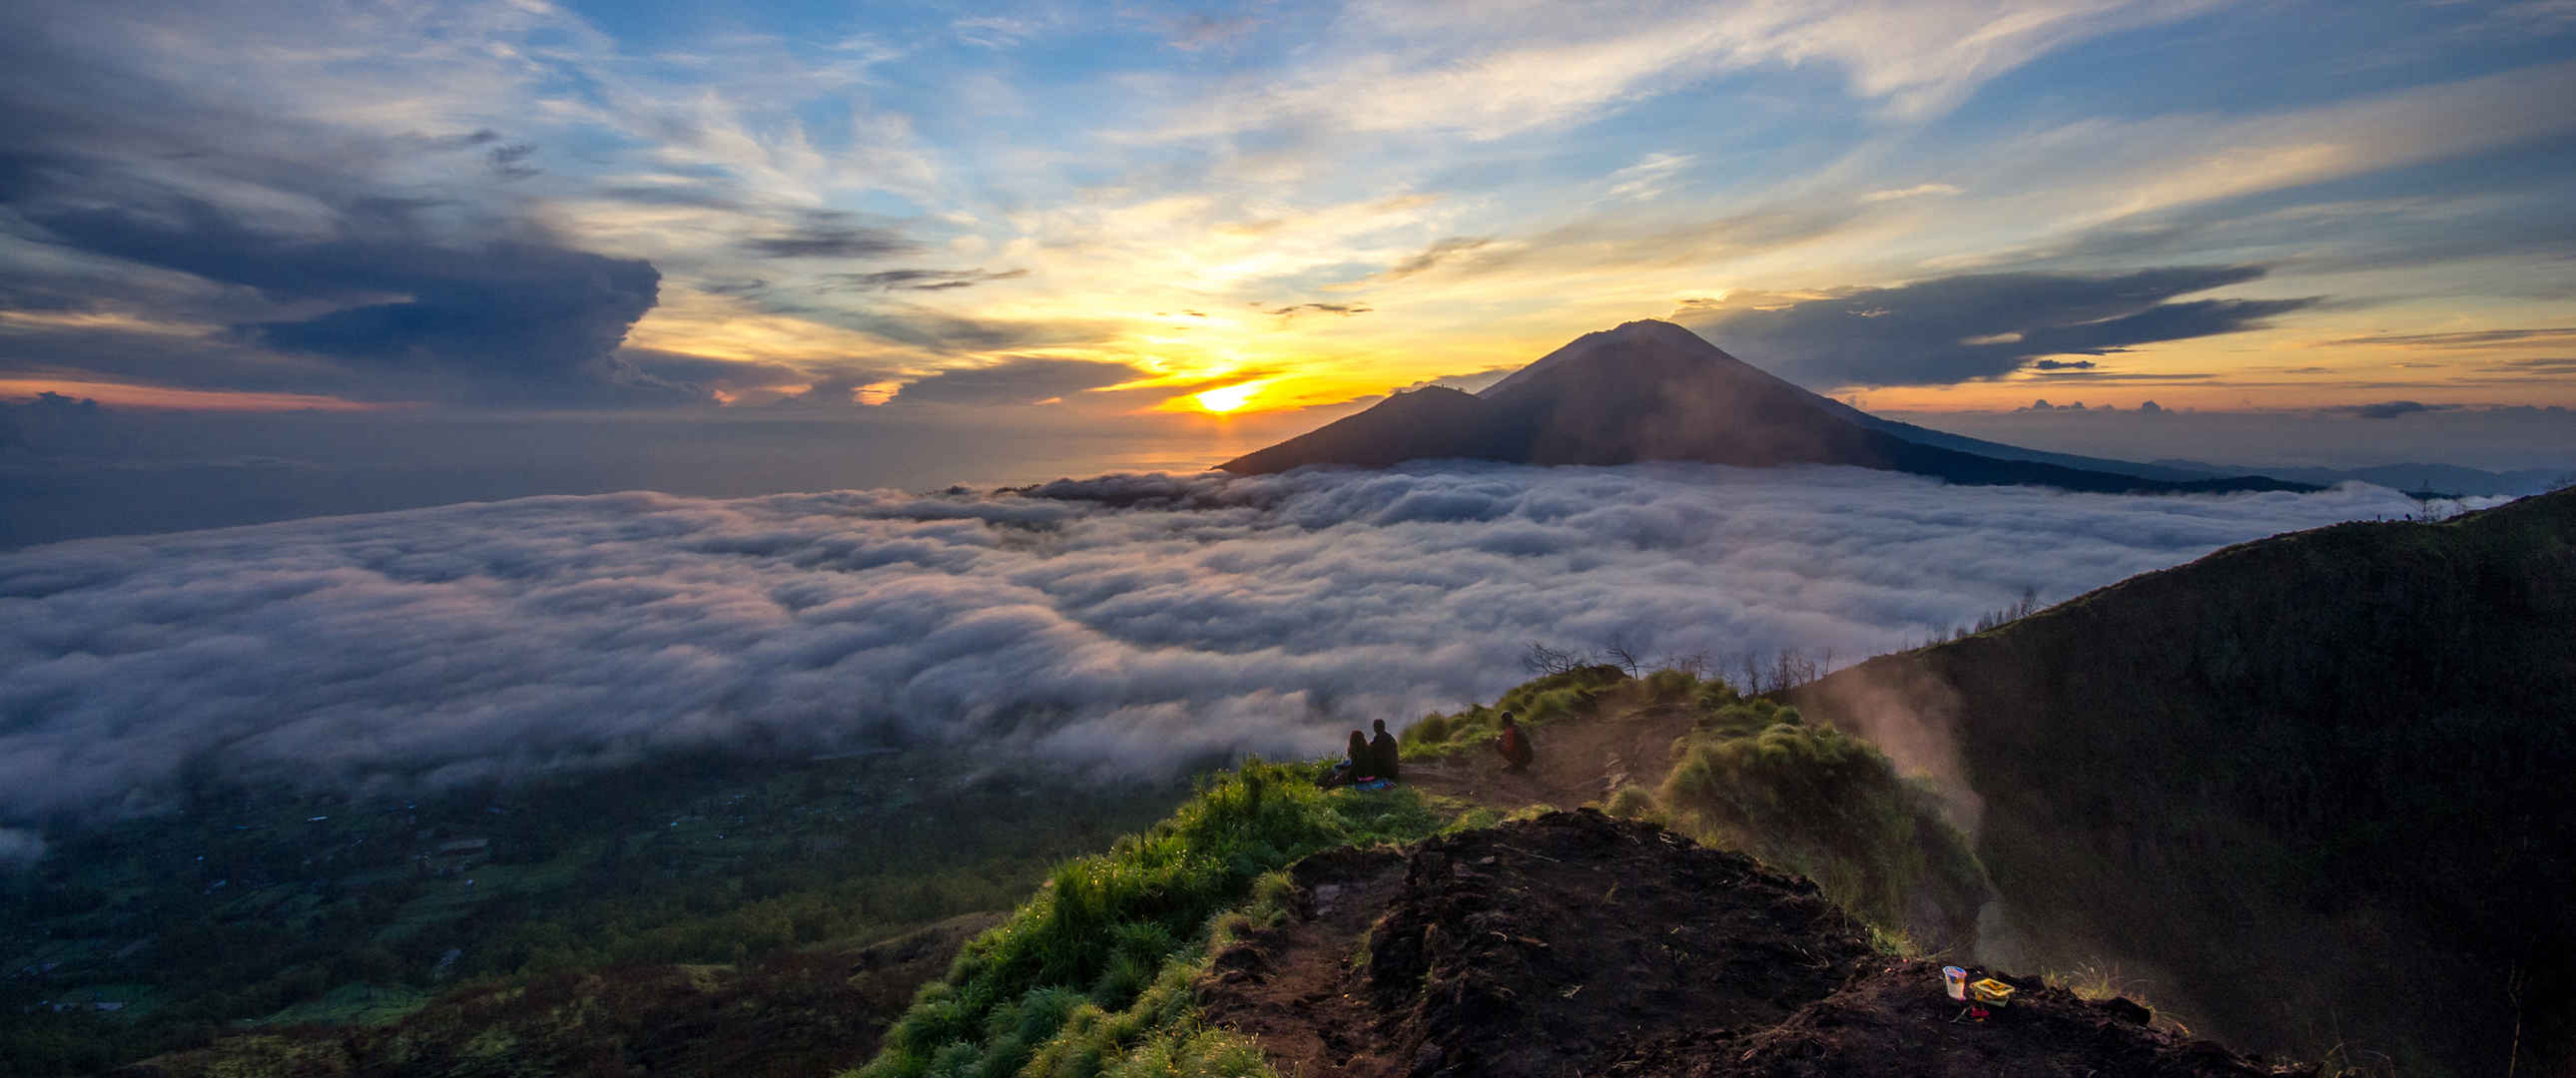 印度尼西亚巴吞尔火山